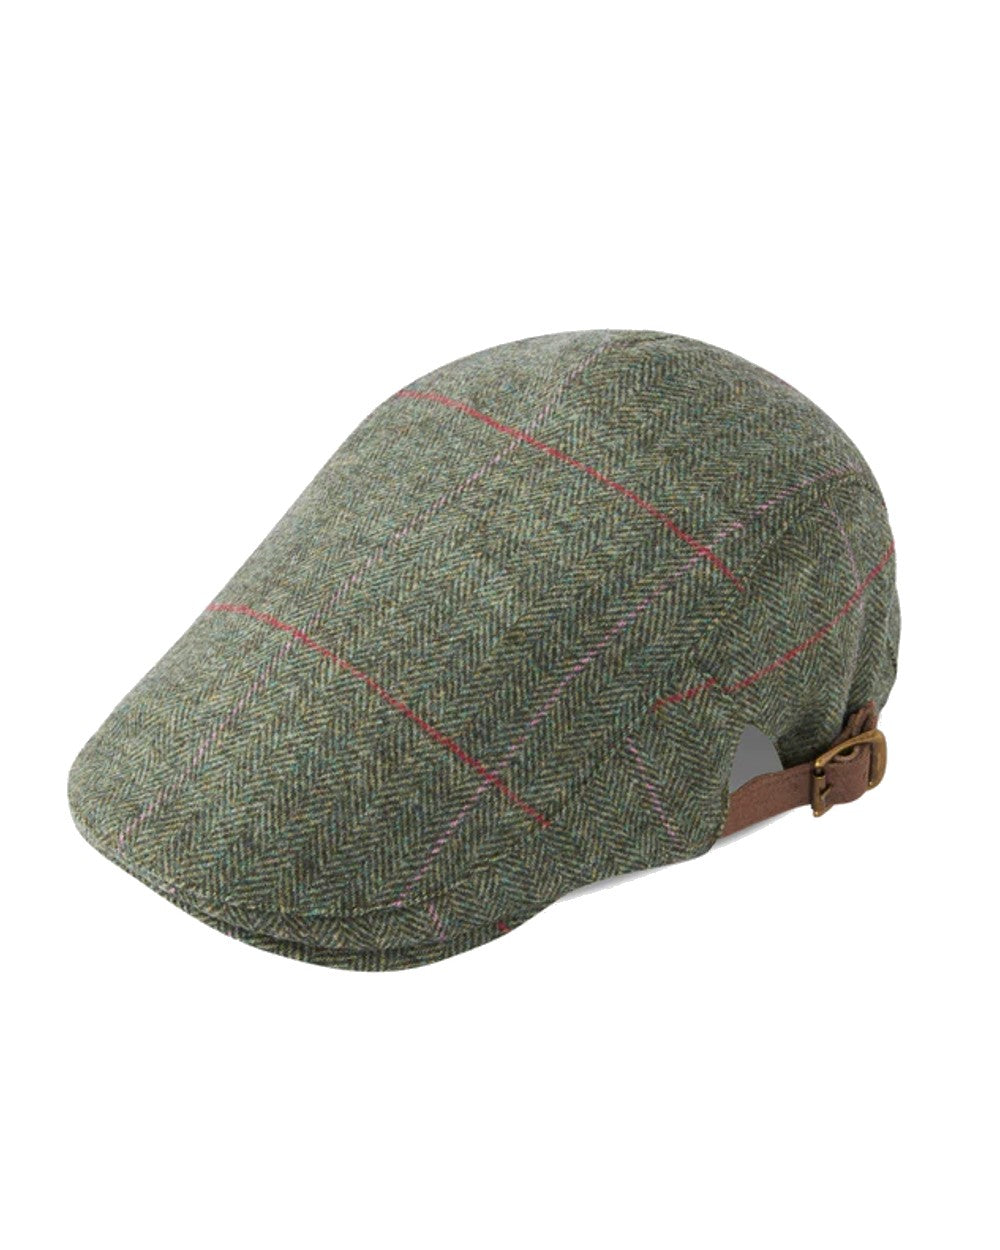 Alan Paine Combrook Adjustable Tweed Cap in Heath 